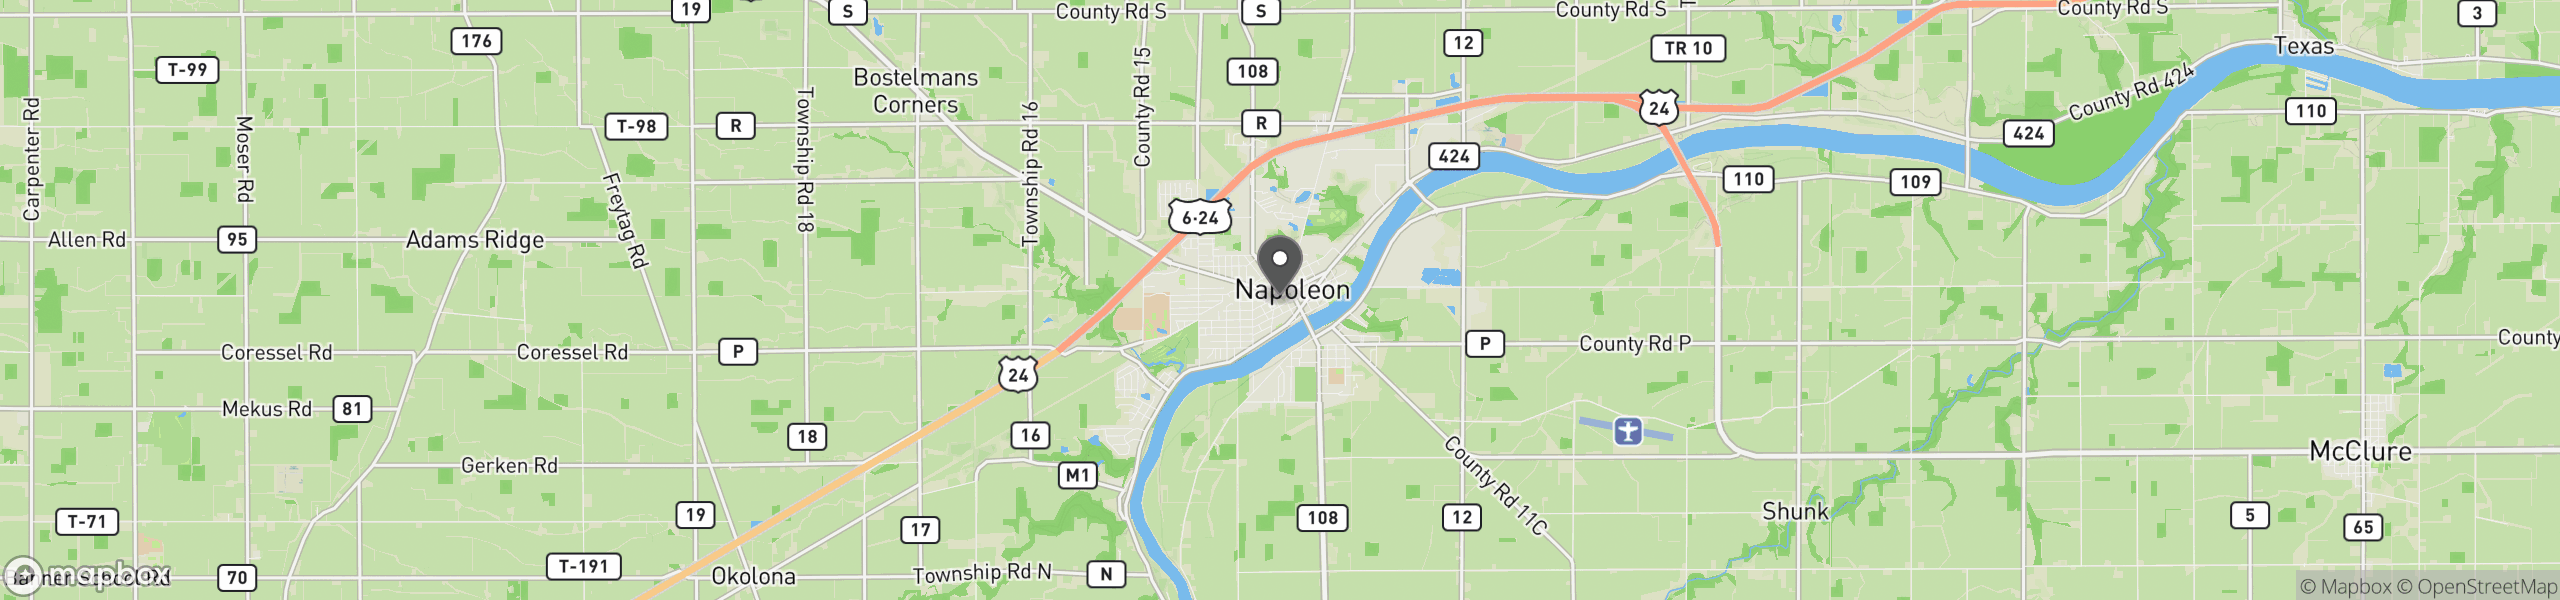 Napoleon, OH